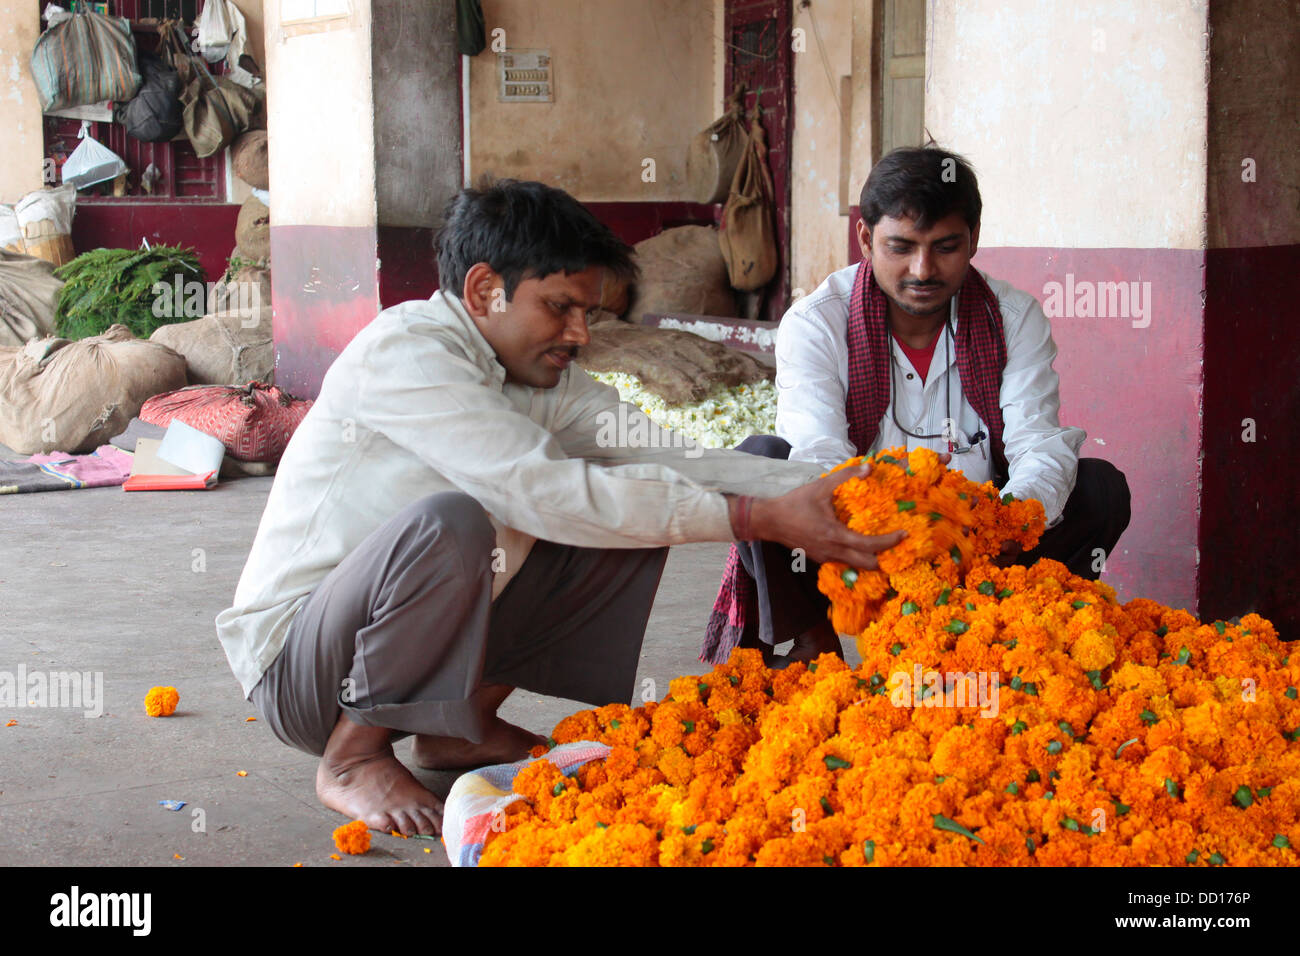 Gli acquirenti e i venditori convergono in corrispondenza di questo antico Mercato dei Fiori a Chandni Chowk, Vecchia Delhi, India. Foto Stock